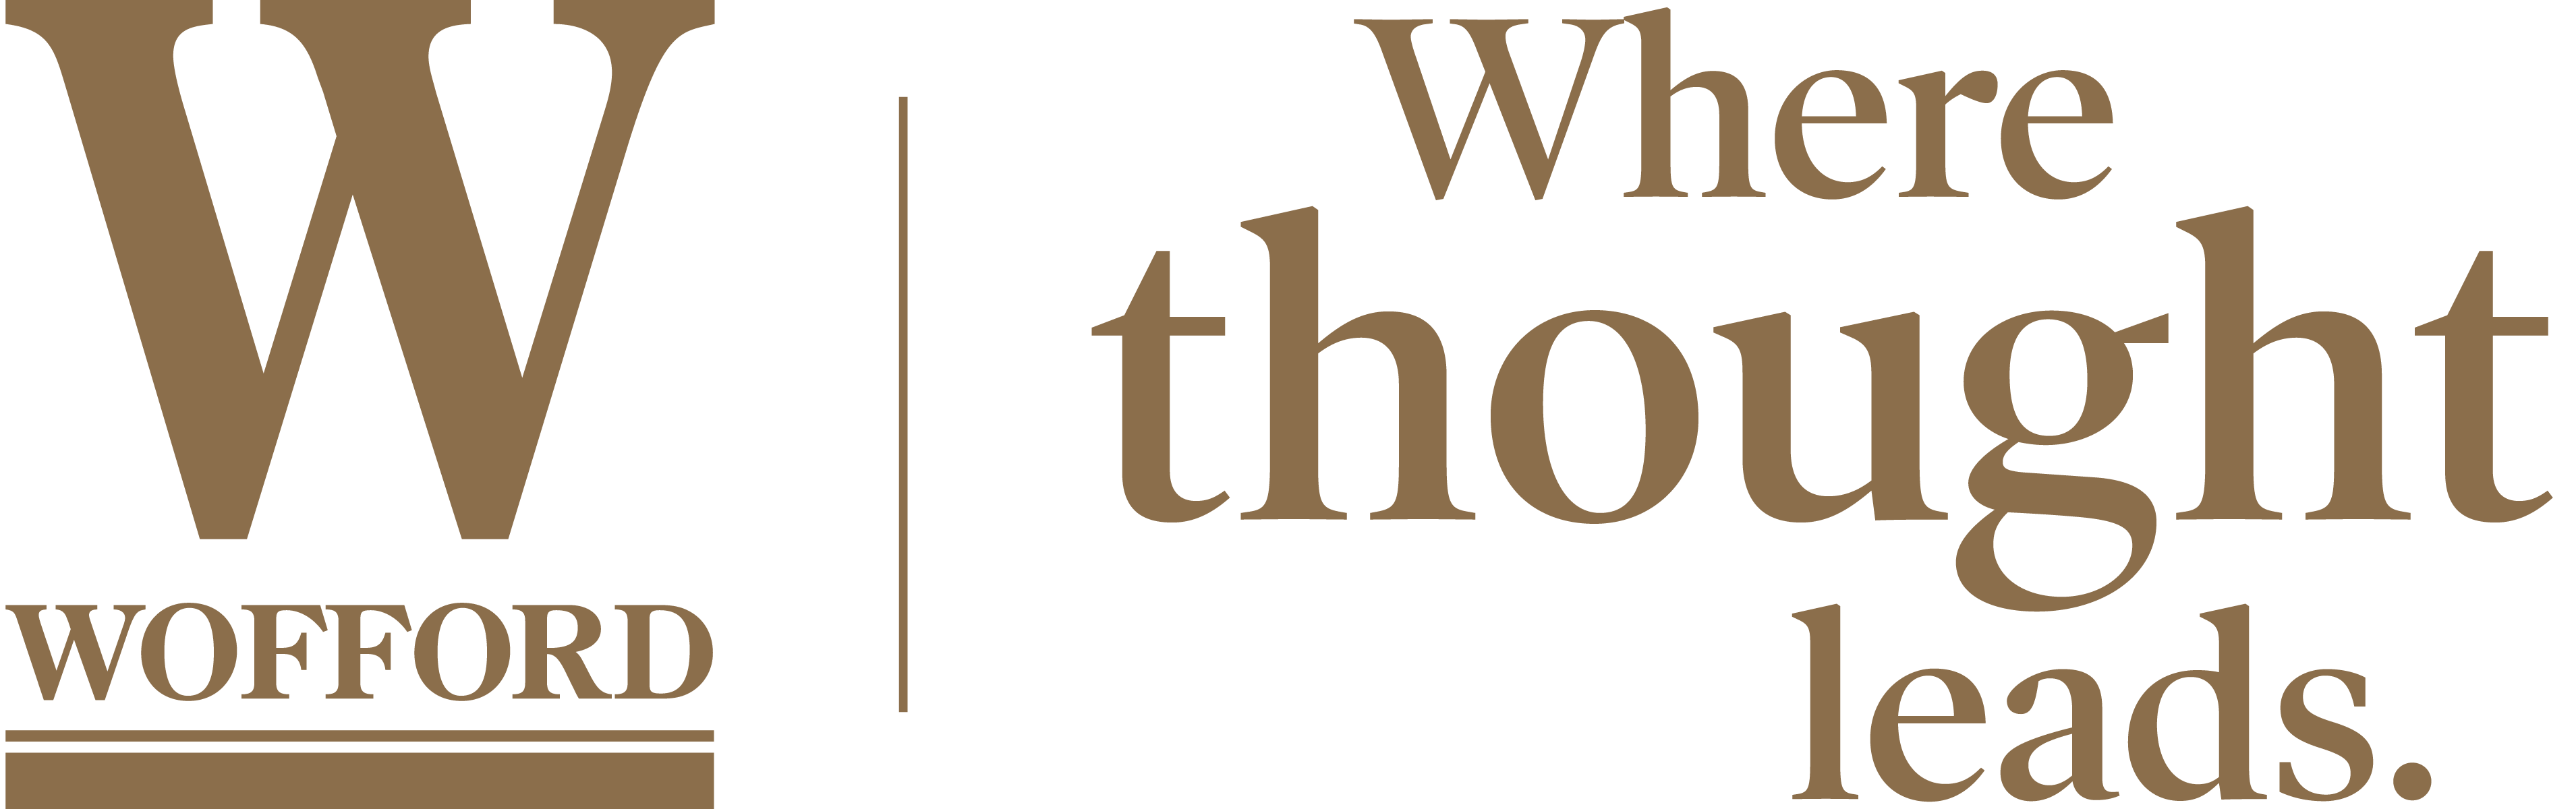 Wofford tagline logo